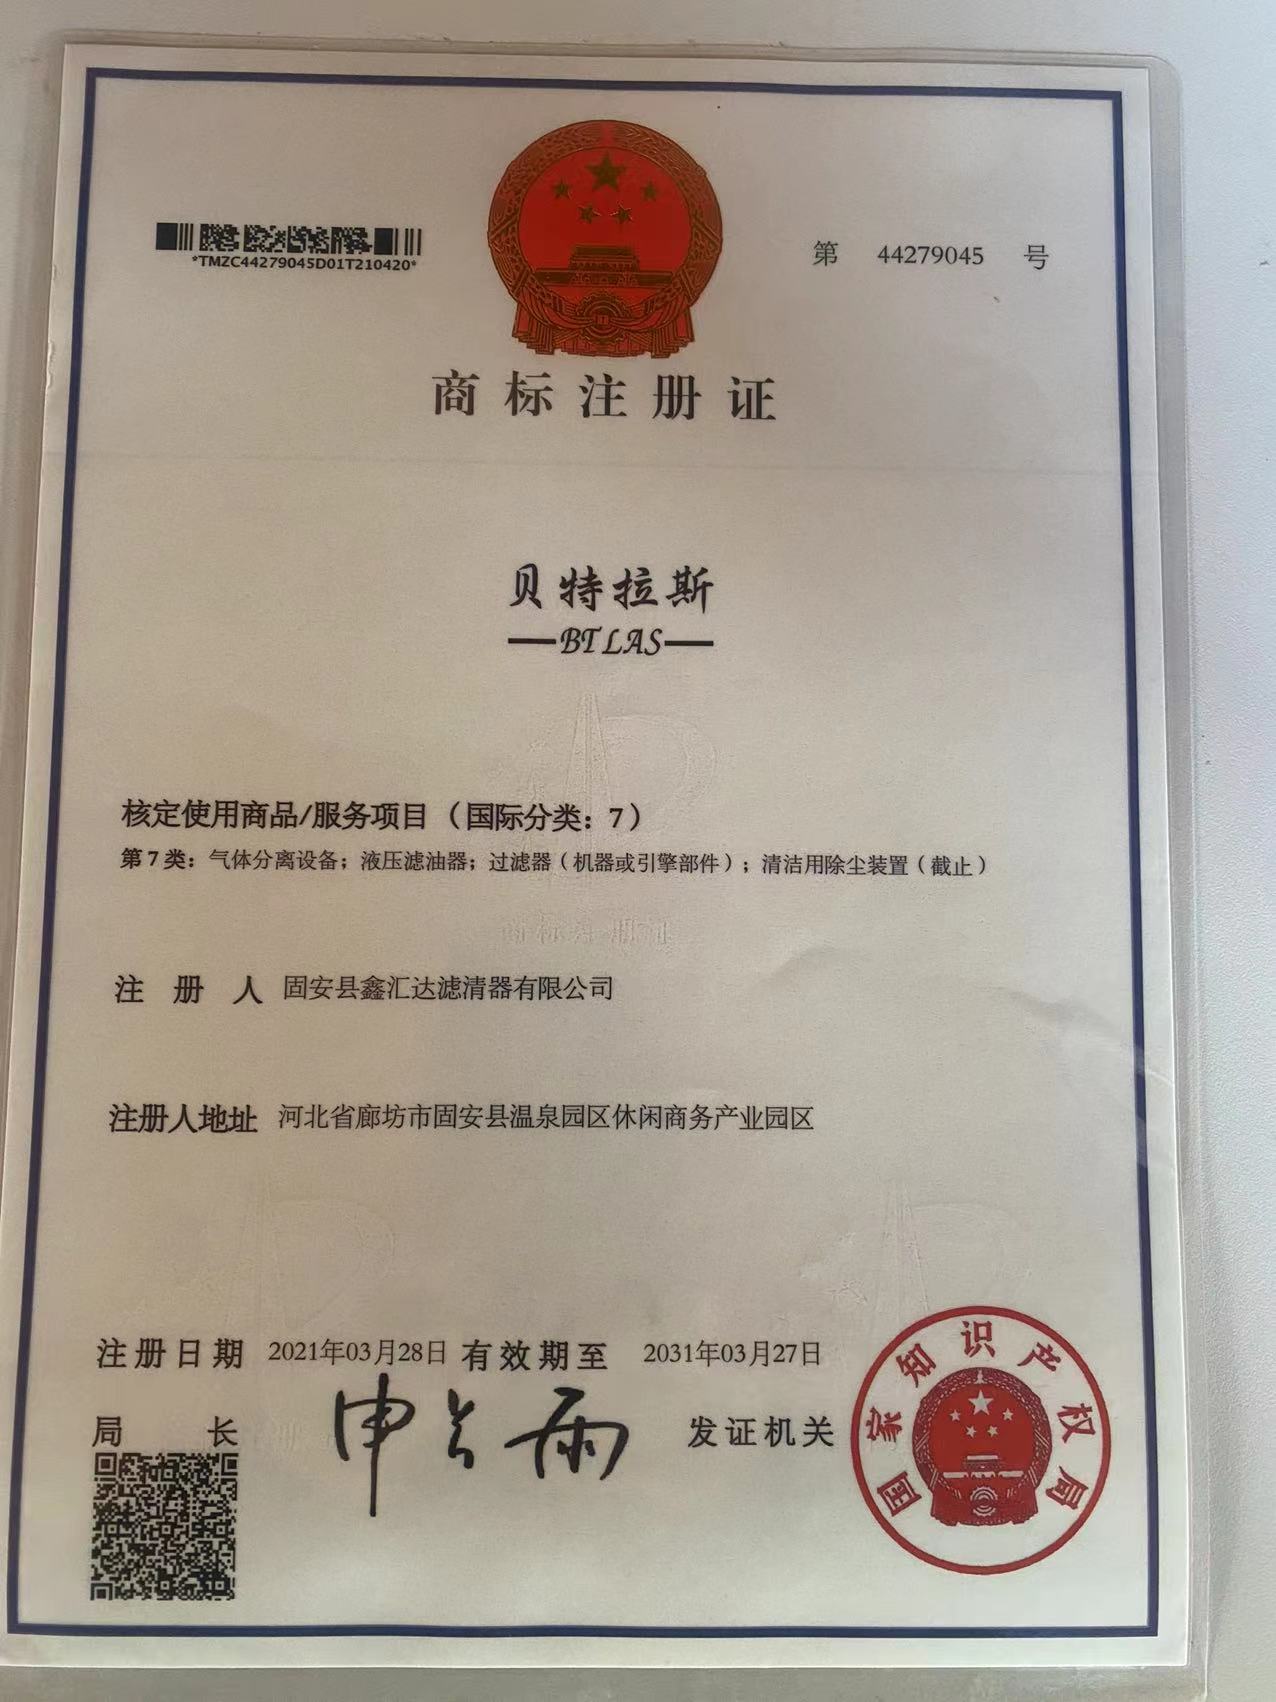 Gu'an Xinhuida Filter Co., Ltd.